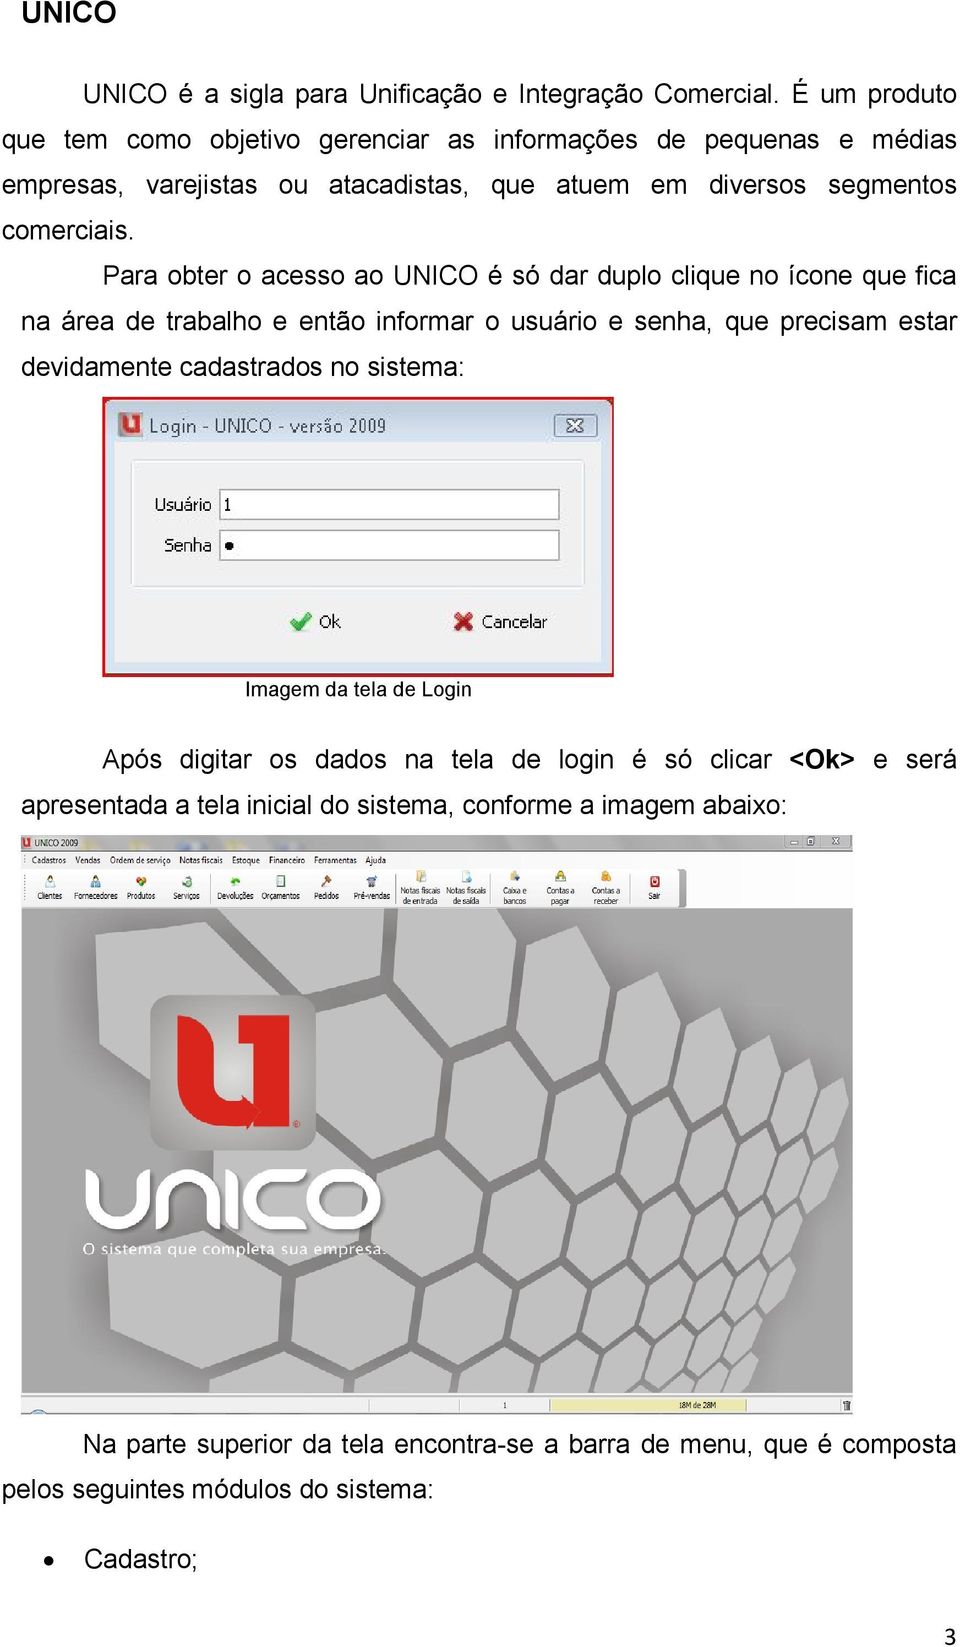 Para obter o acesso ao UNICO é só dar duplo clique no ícone que fica na área de trabalho e então informar o usuário e senha, que precisam estar devidamente cadastrados